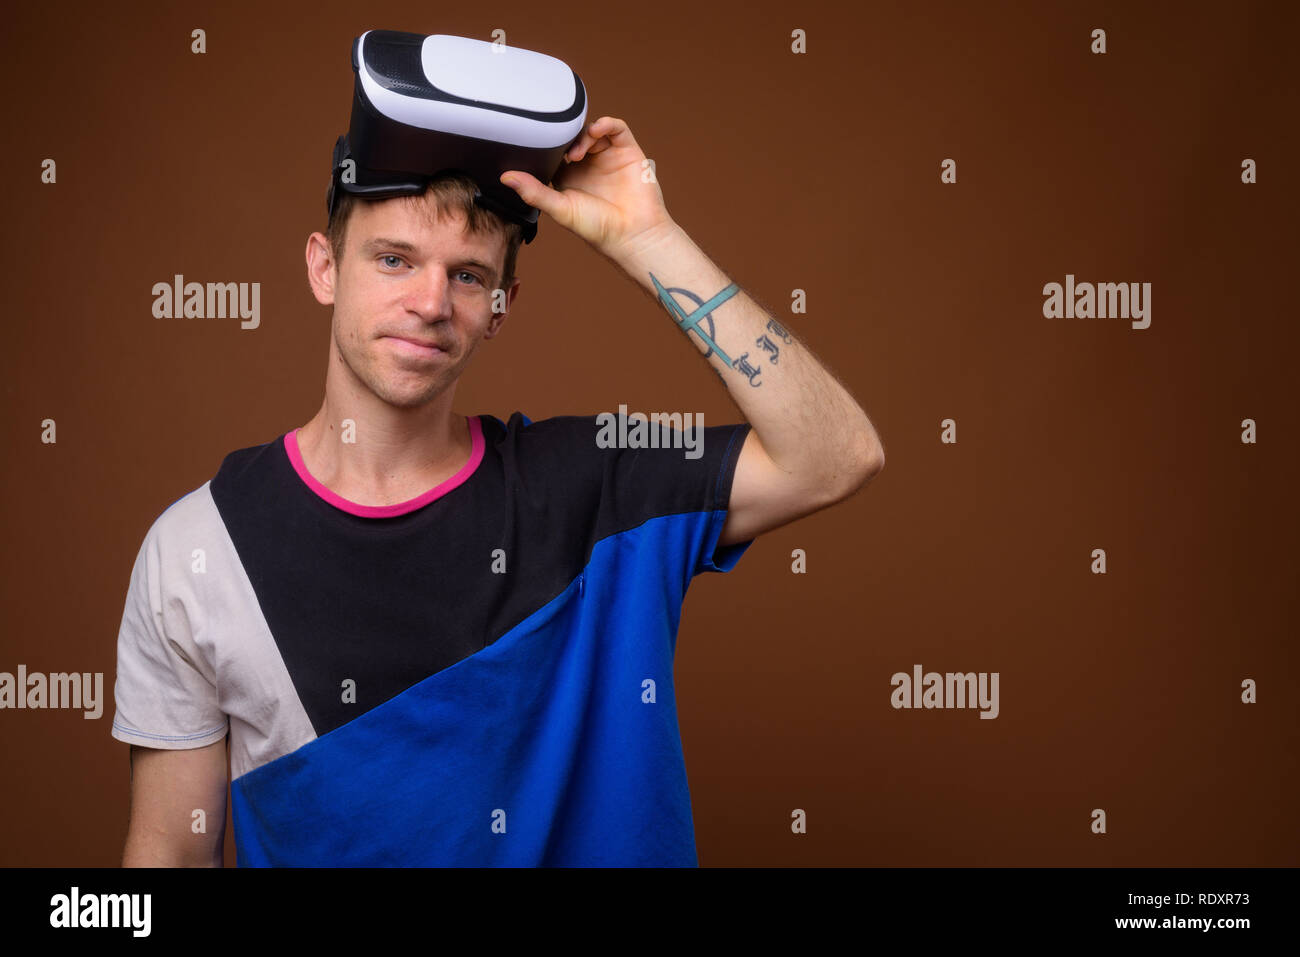 Mann mit Virtual reality Headset gegen braunen Hintergrund Stockfoto